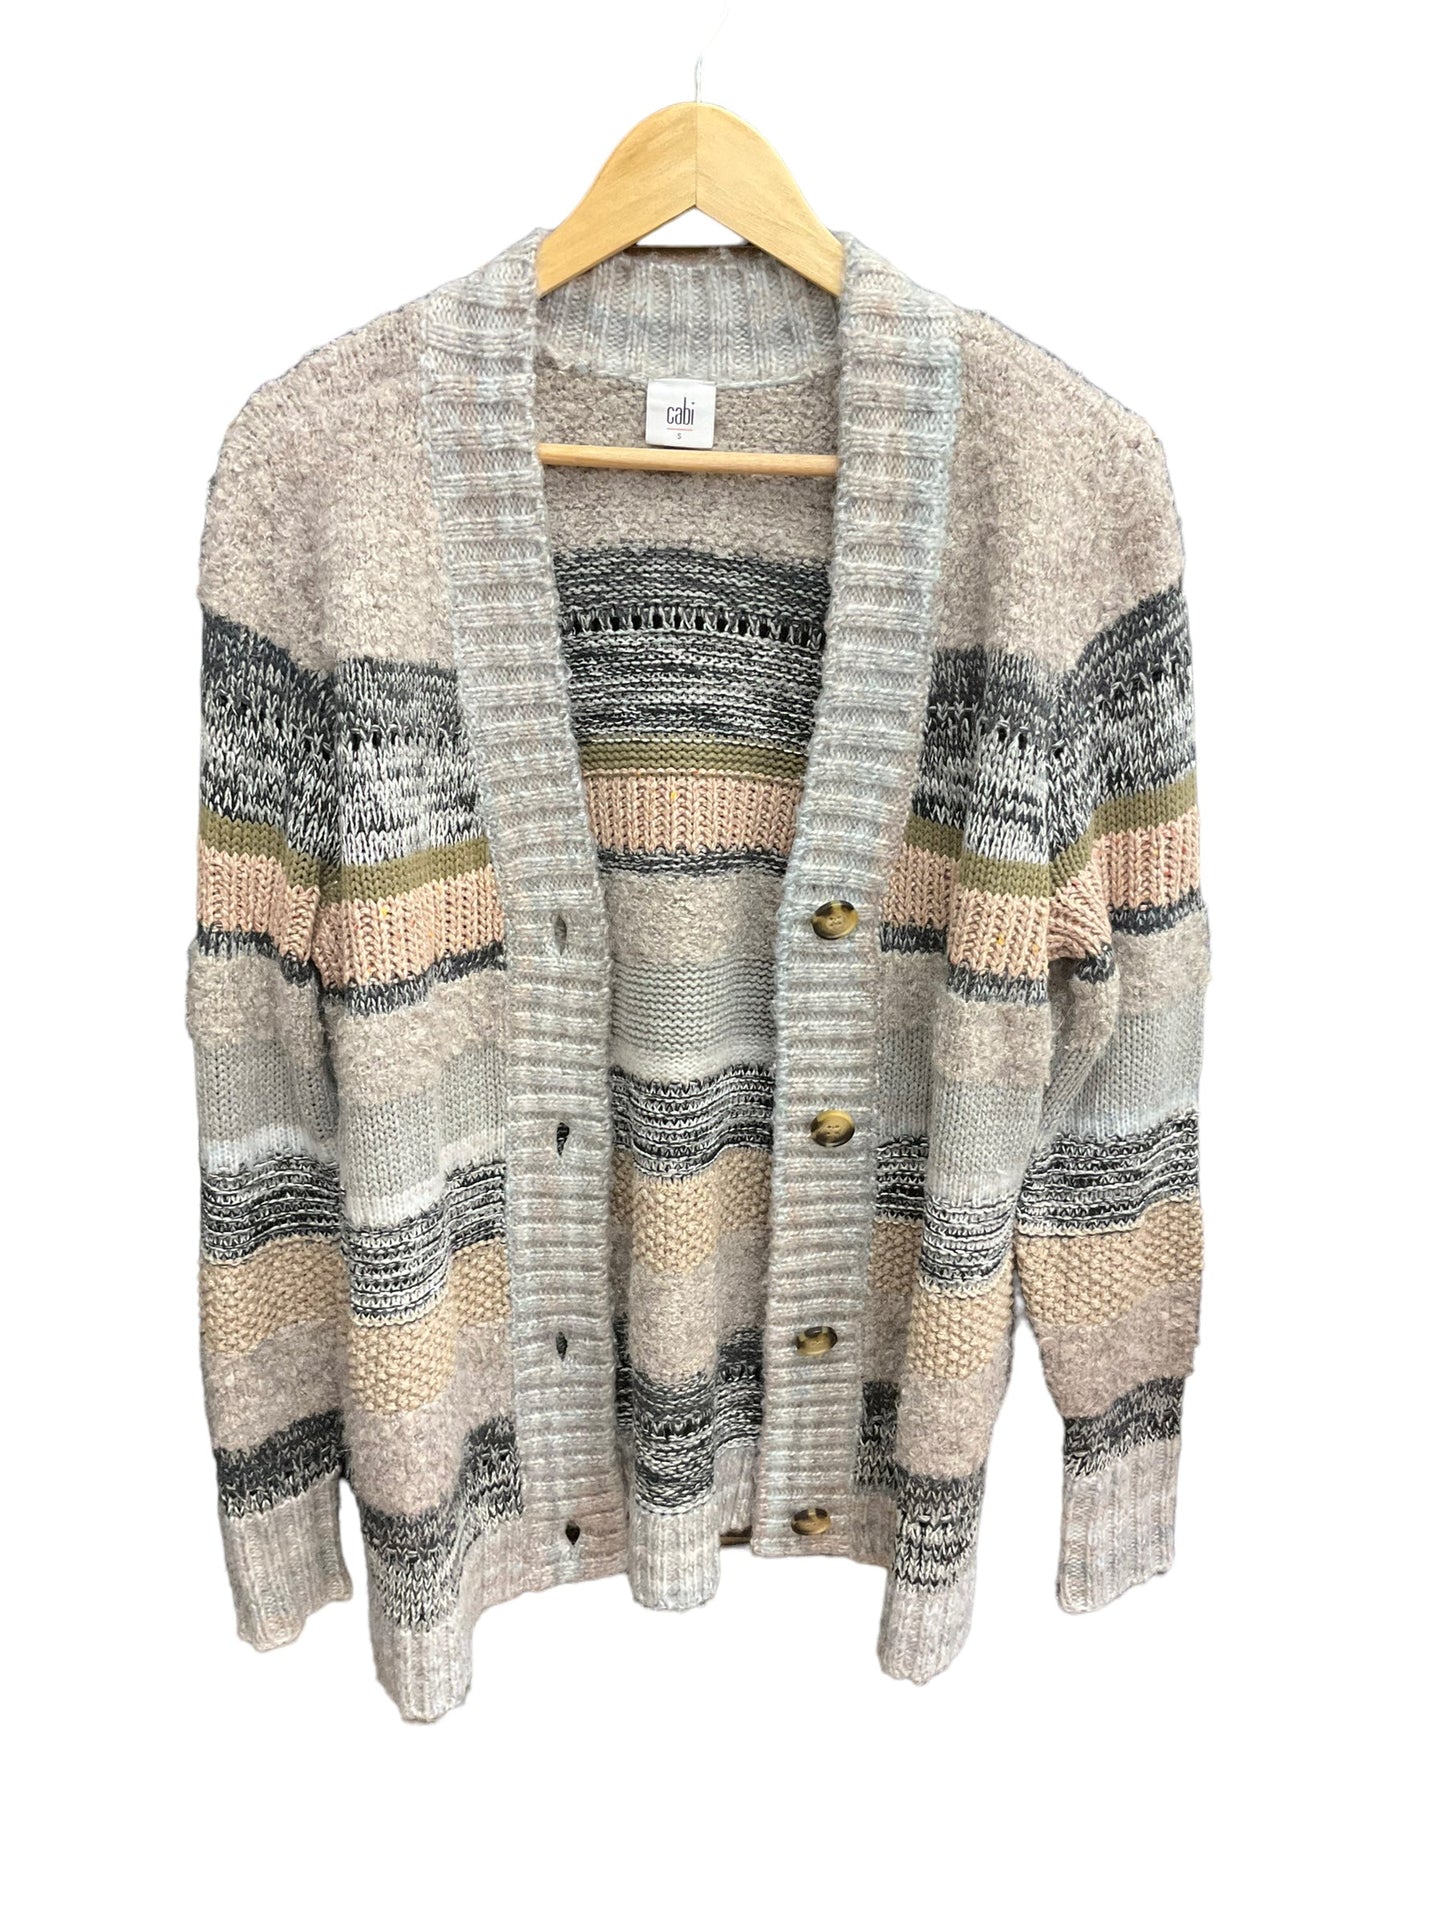 Multi-colored Sweater Cardigan Cabi, Size S